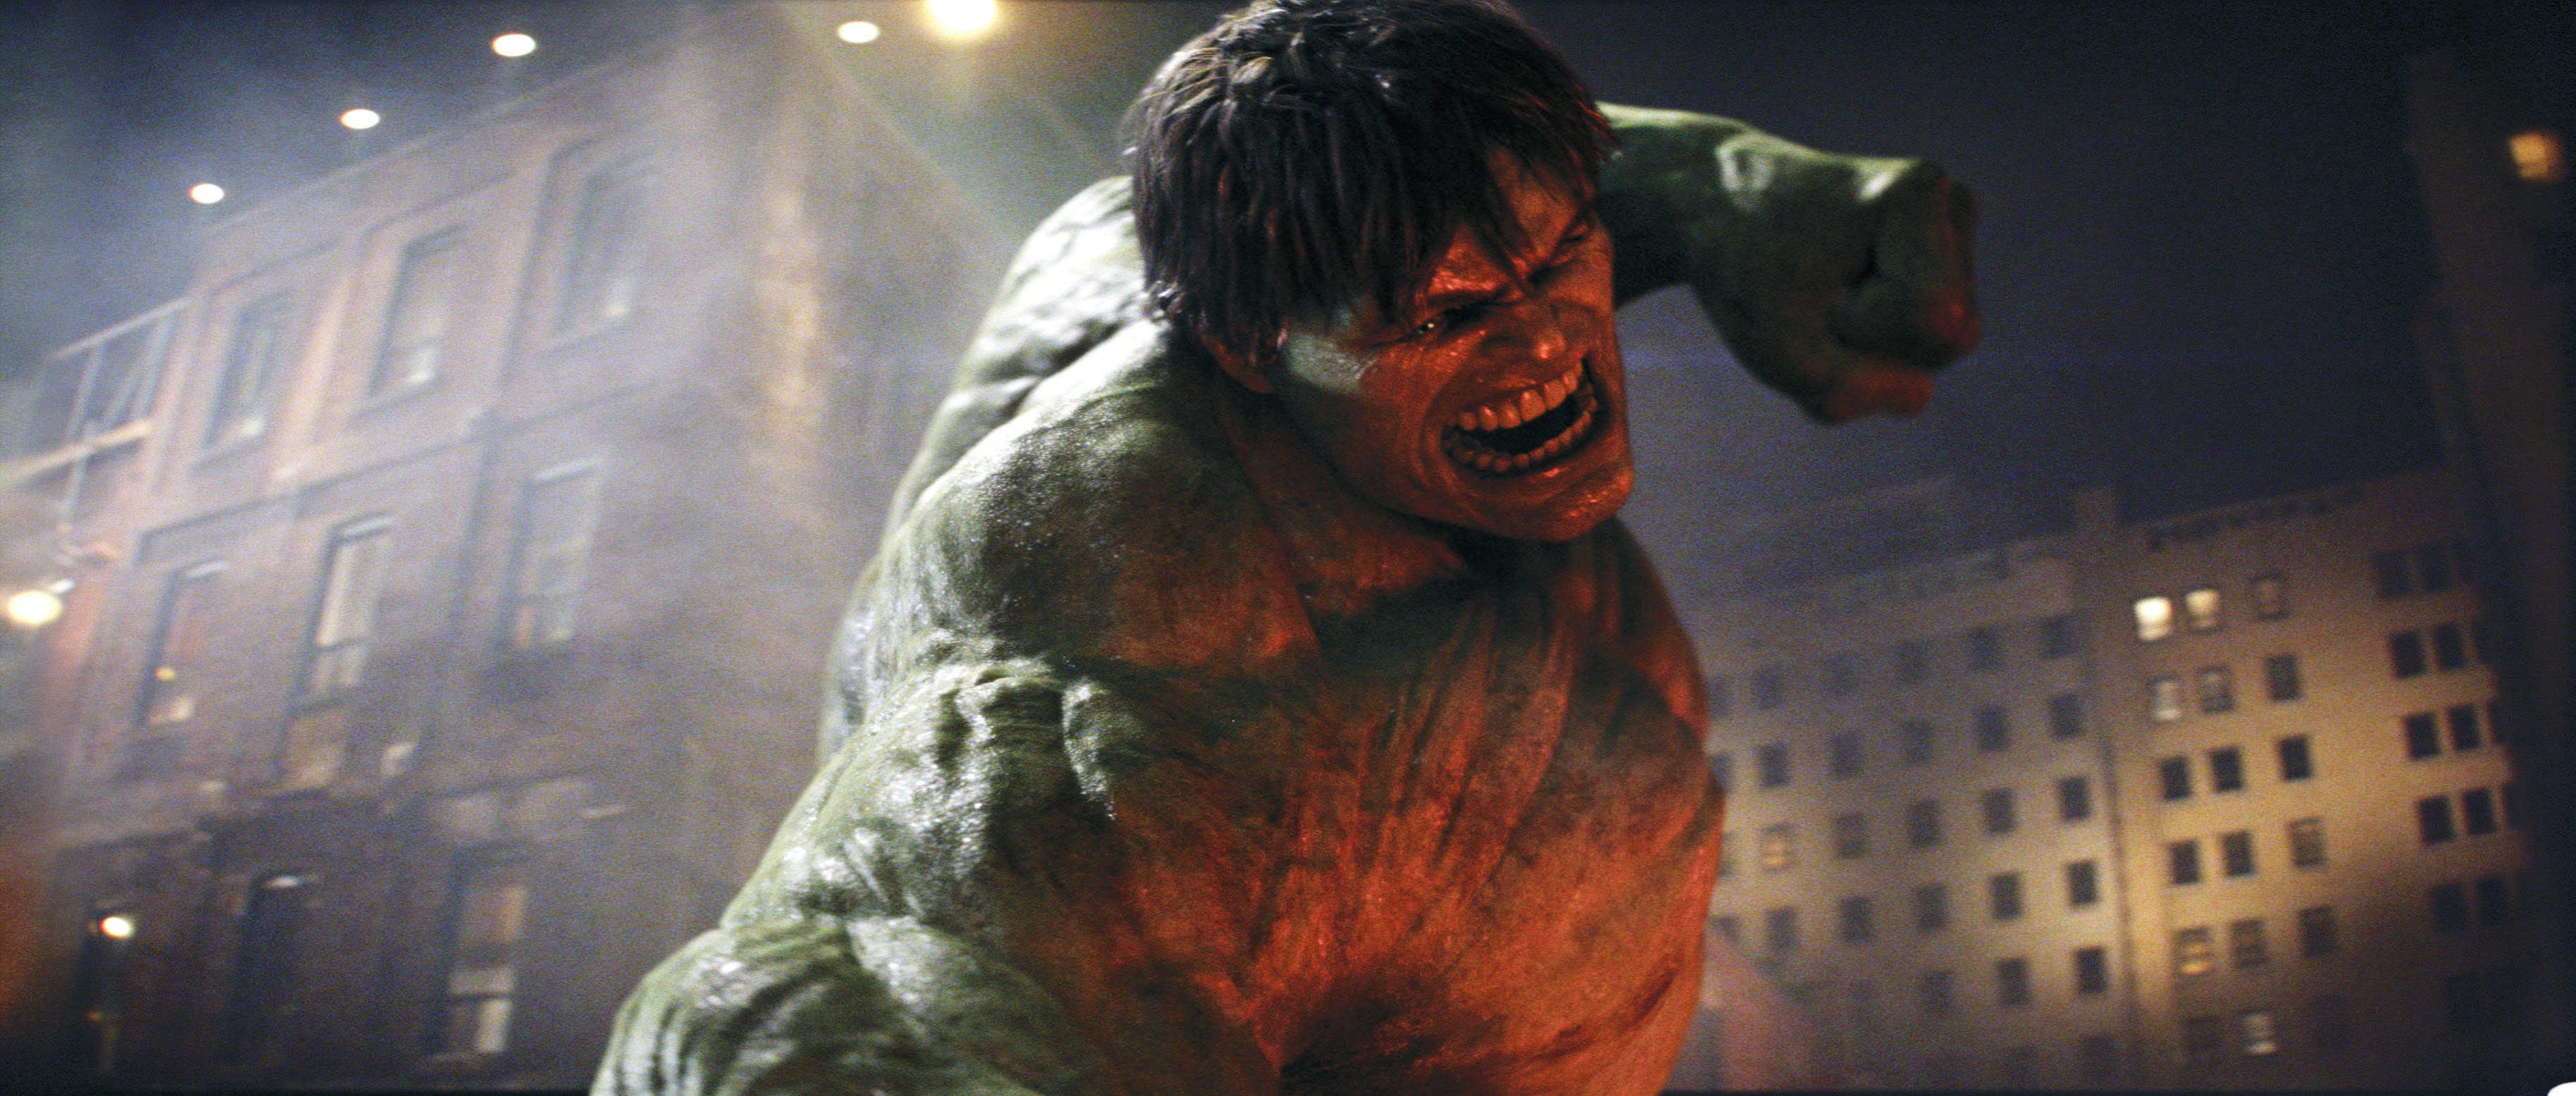 Невероятный халк на русском. Невероятный Халк. Невероятный Халк (2008) (the incredible Hulk).